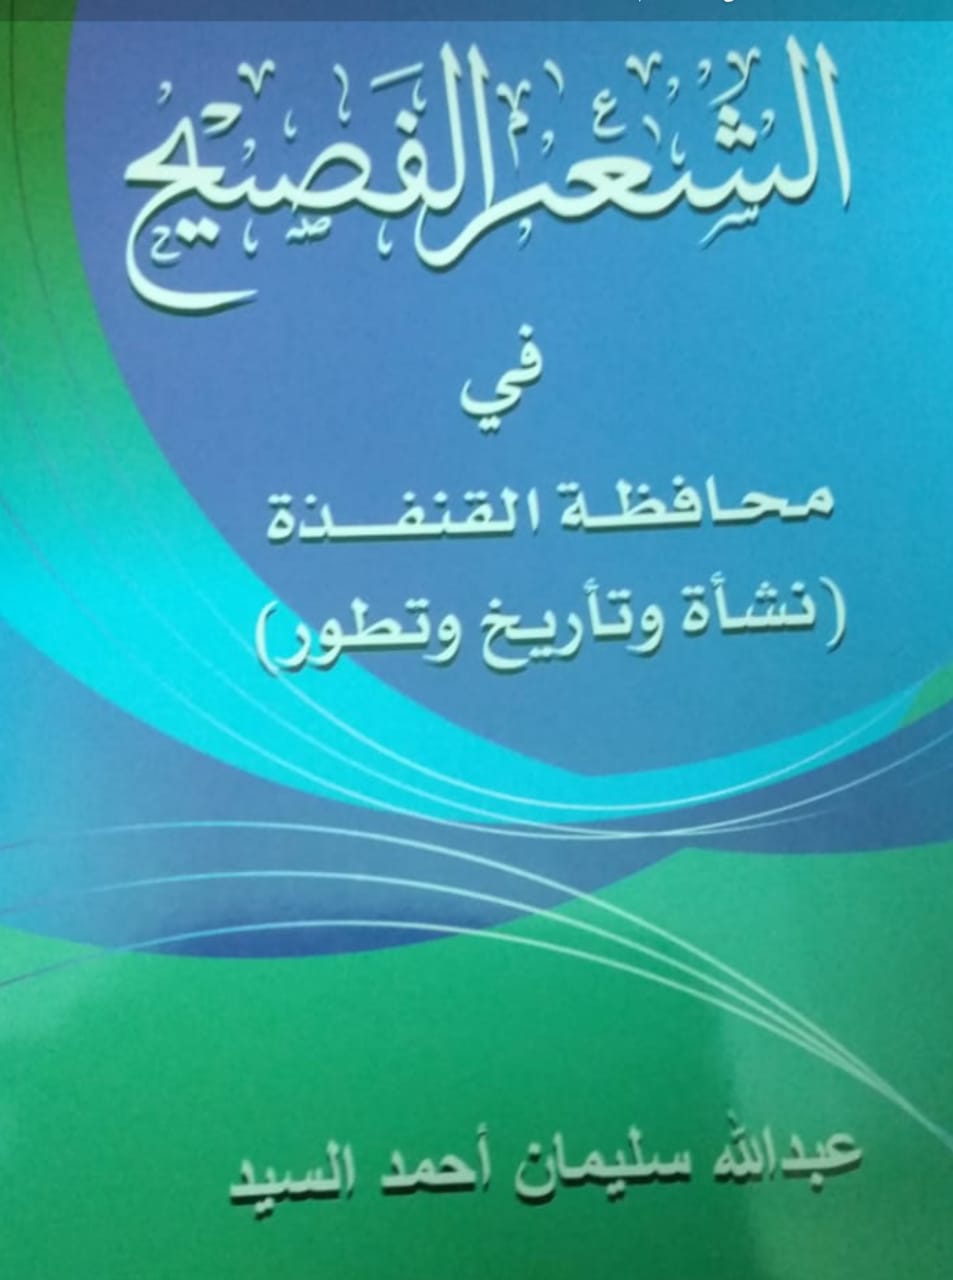 السيد يصدر كتابه الشعر الفصيح في محافظة القنفذة صحيفة خبر عاجل